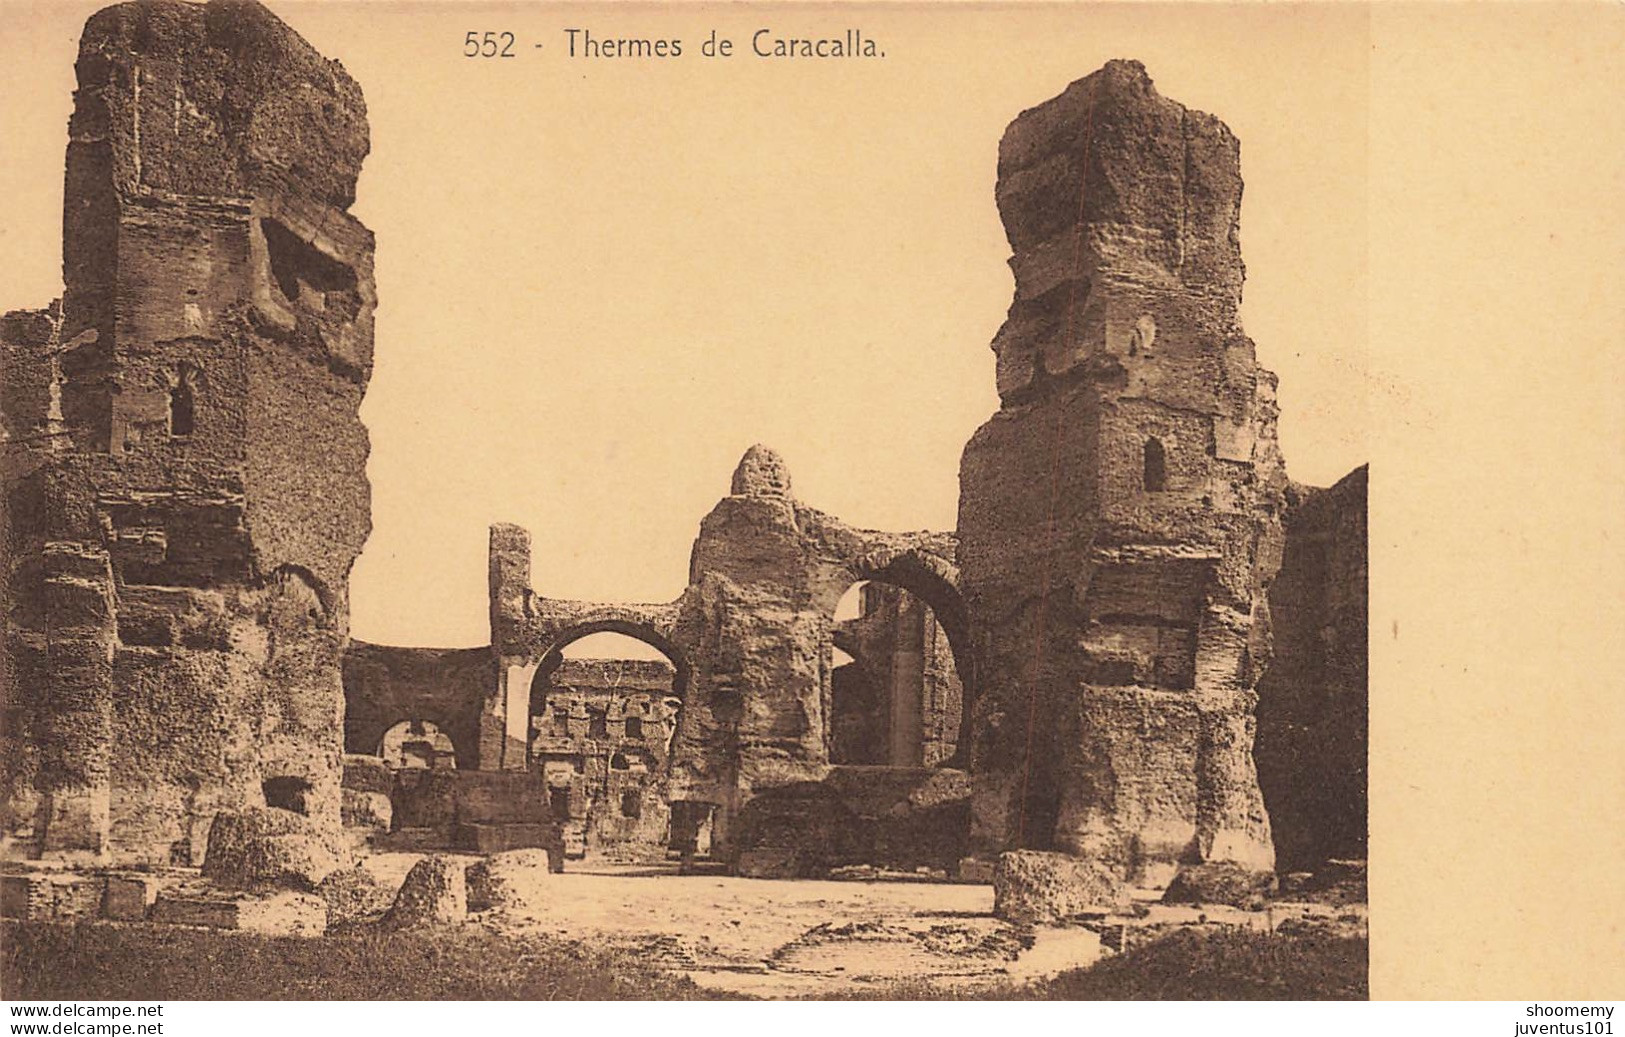 CPA Roma-Rome-Thermes De Caracalla-552       L2409 - Andere Monumente & Gebäude